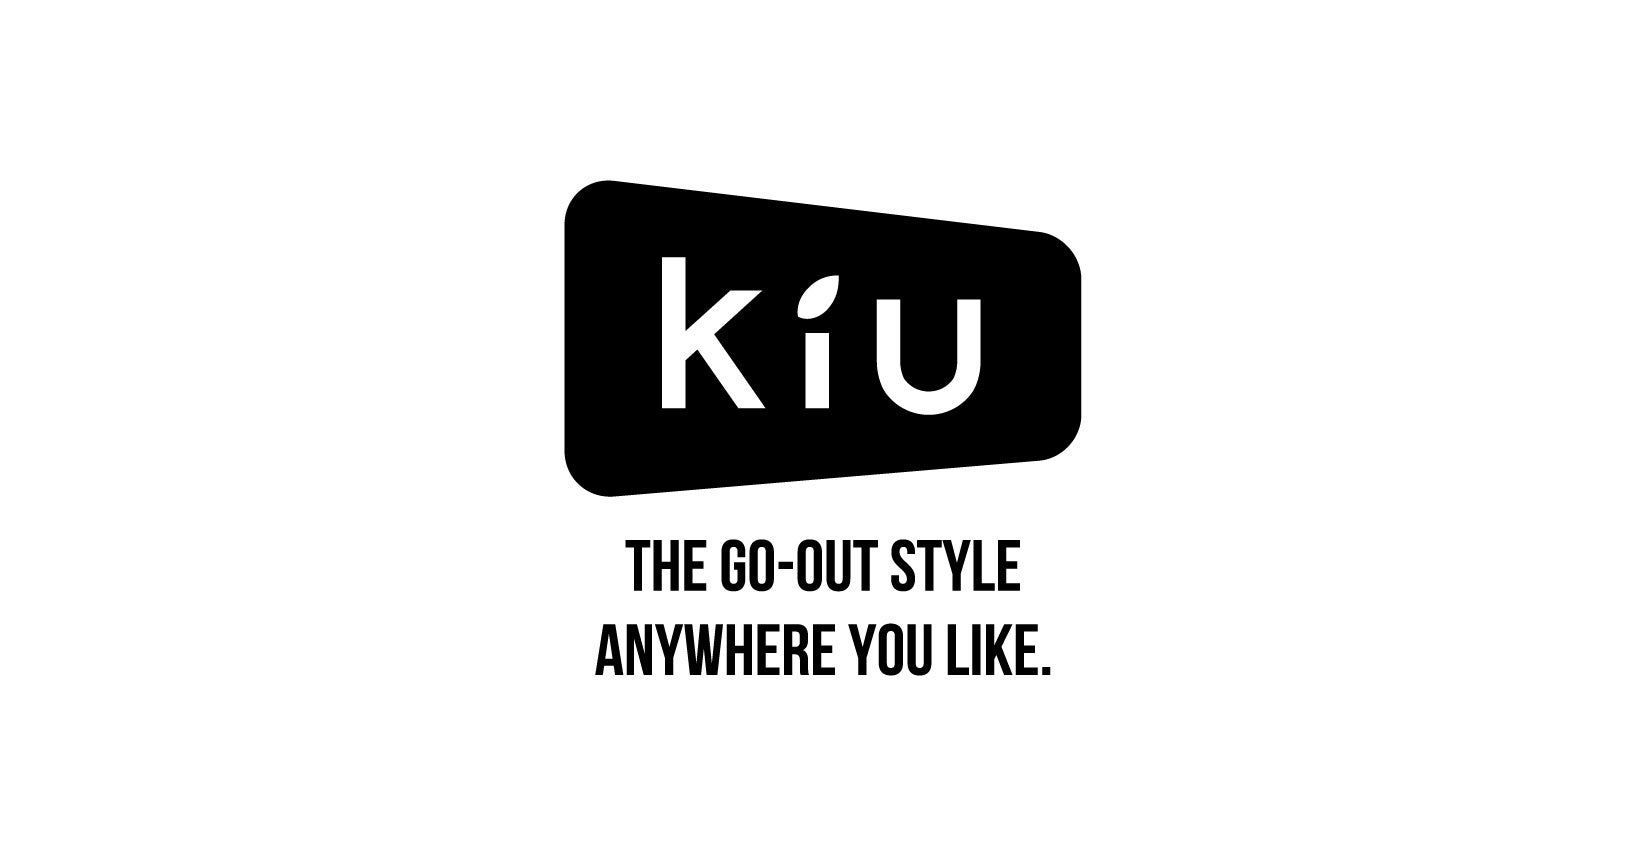 クリアで彩る、夏の想い出。透明感あふれる総柄クリアシリーズ レイングッズブランド「KiU(キウ)」が贈る、ニューサマーアイテム「KiU クリアコレクション」発売のサブ画像15